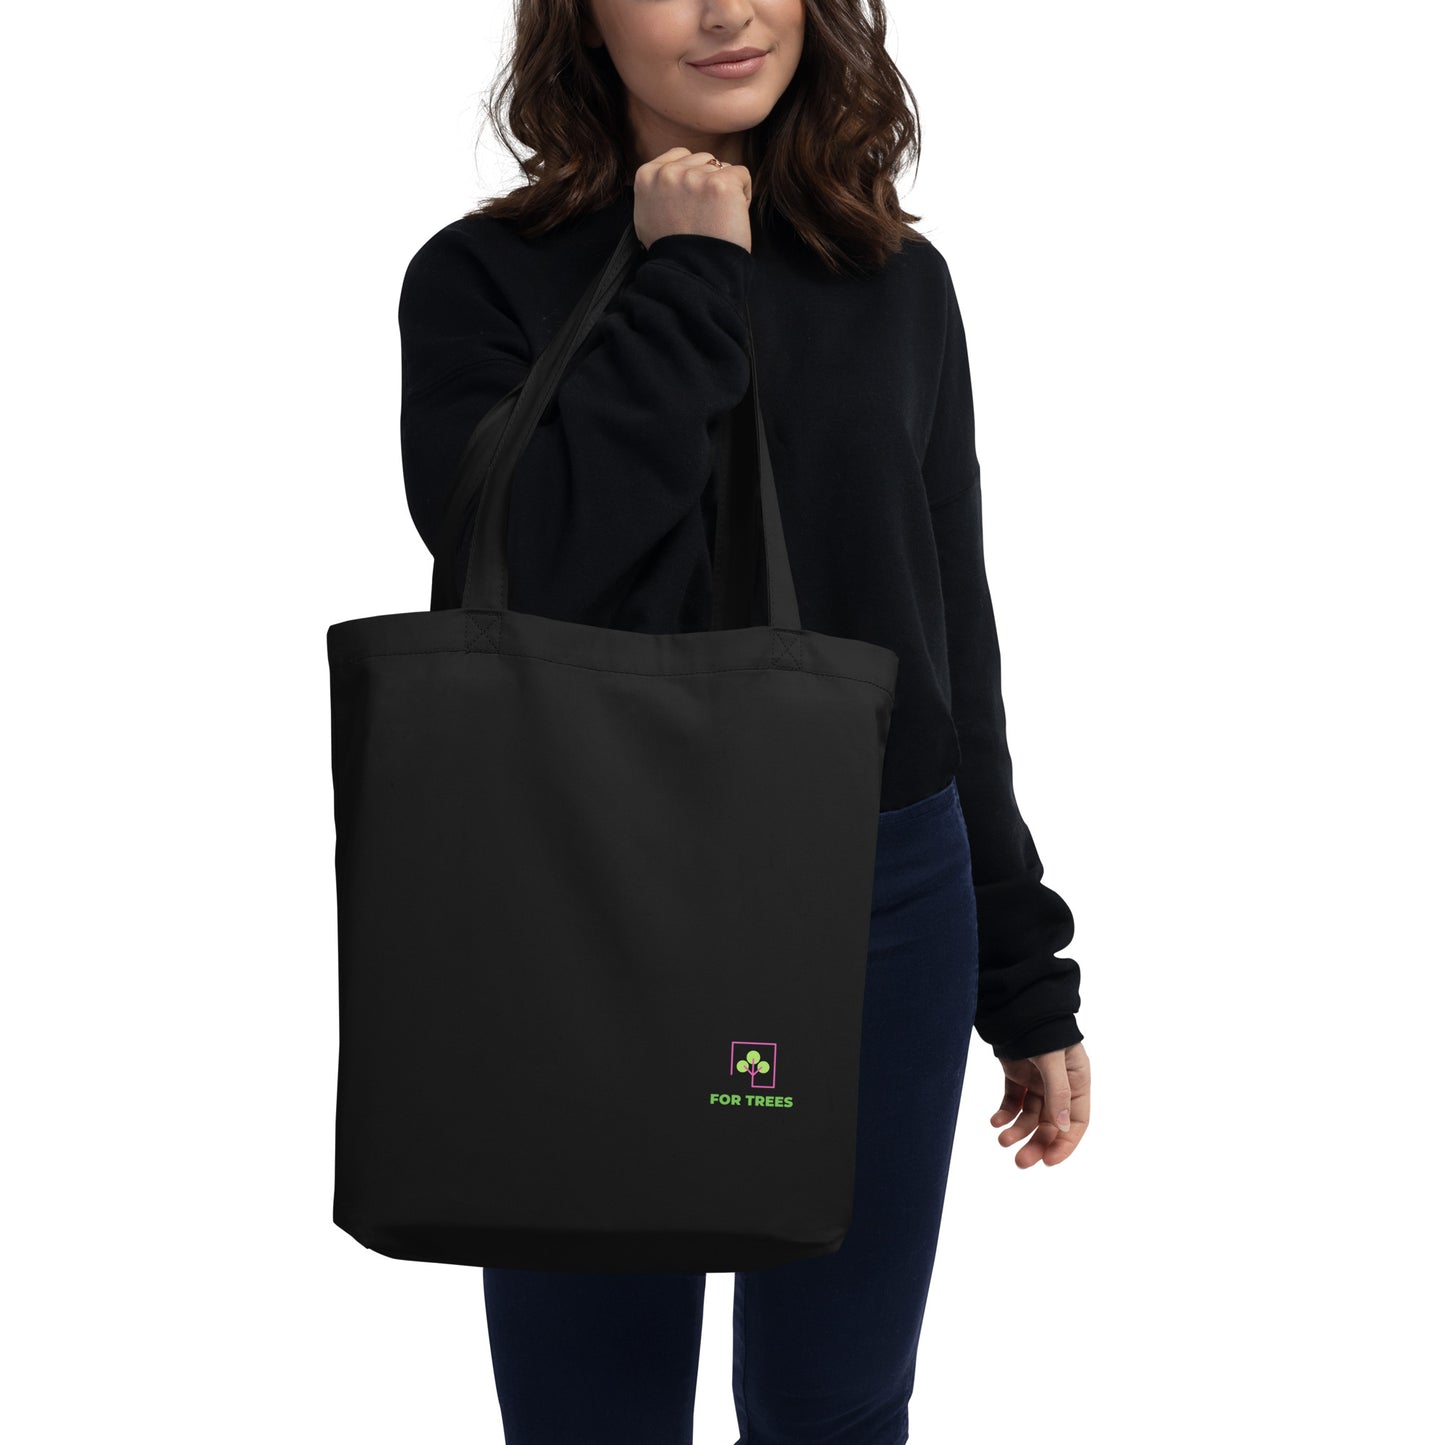 GreenCarry Eco Tote Bag